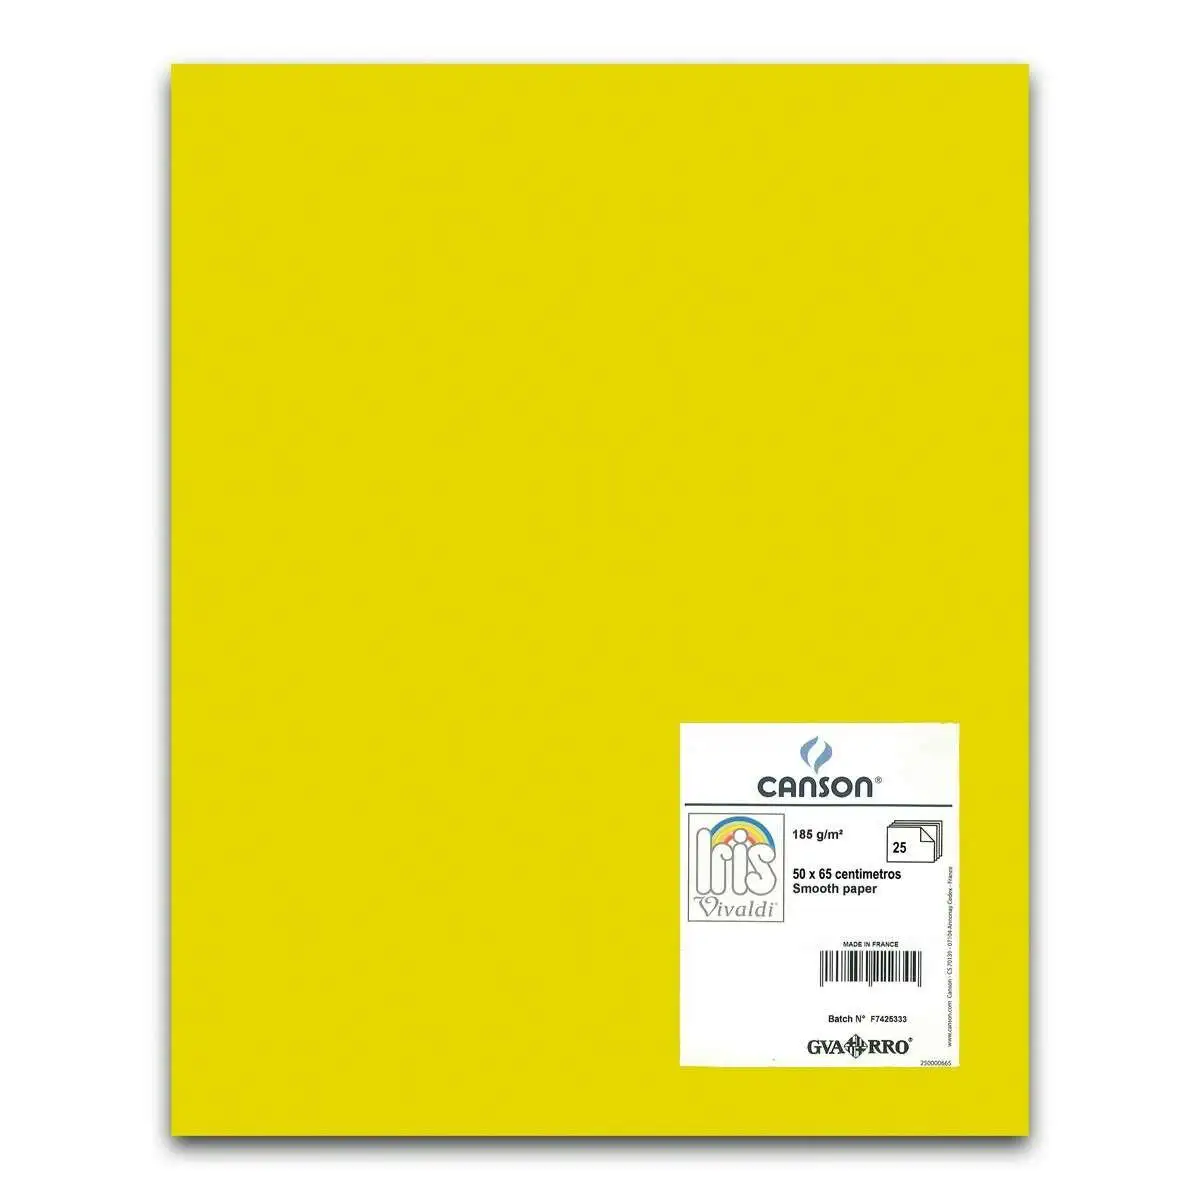 Papiers carton iris jaune 50 x 65 cm 25 unites _1375. Bienvenue sur DIAYTAR SENEGAL - Où l'Authenticité Rencontre le Confort. Plongez dans notre univers de produits qui allient tradition et commodité pour répondre à vos besoins.